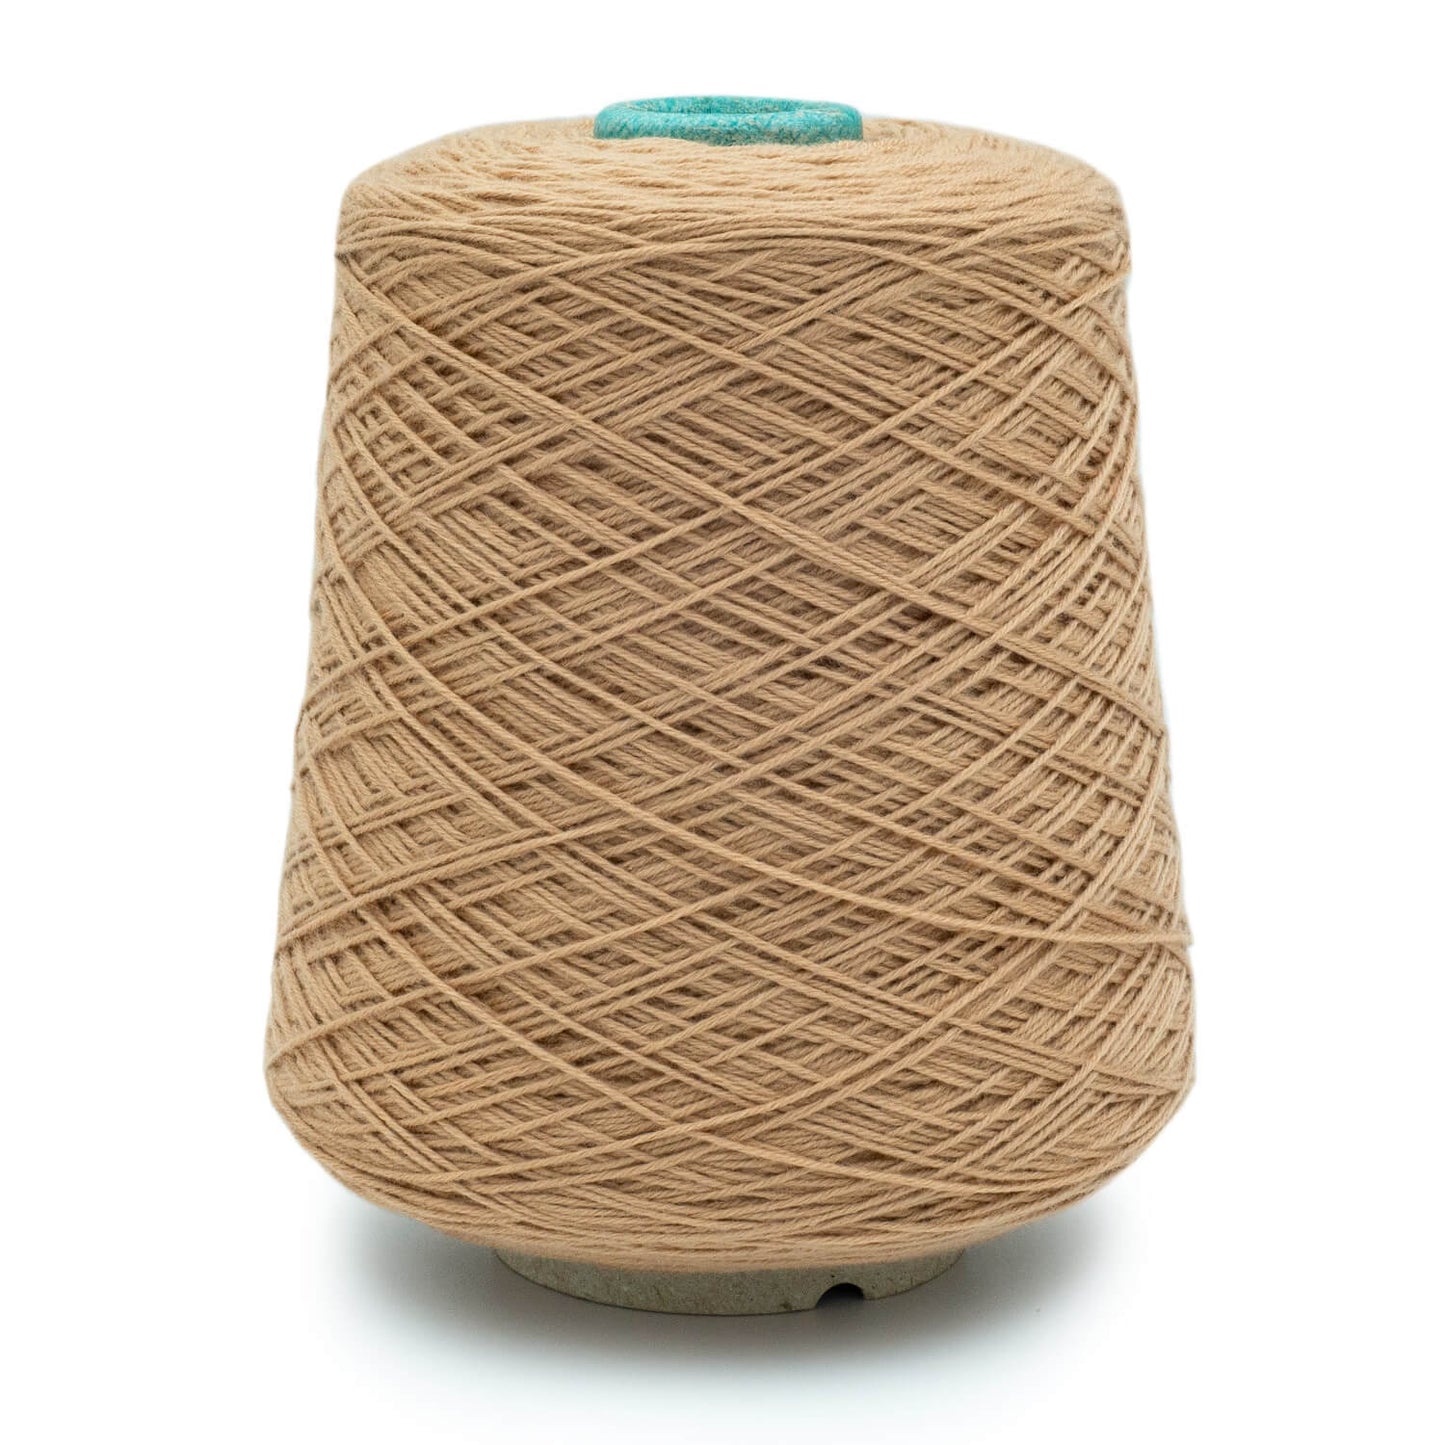 Supermerino Merino Wool Cone Yarn